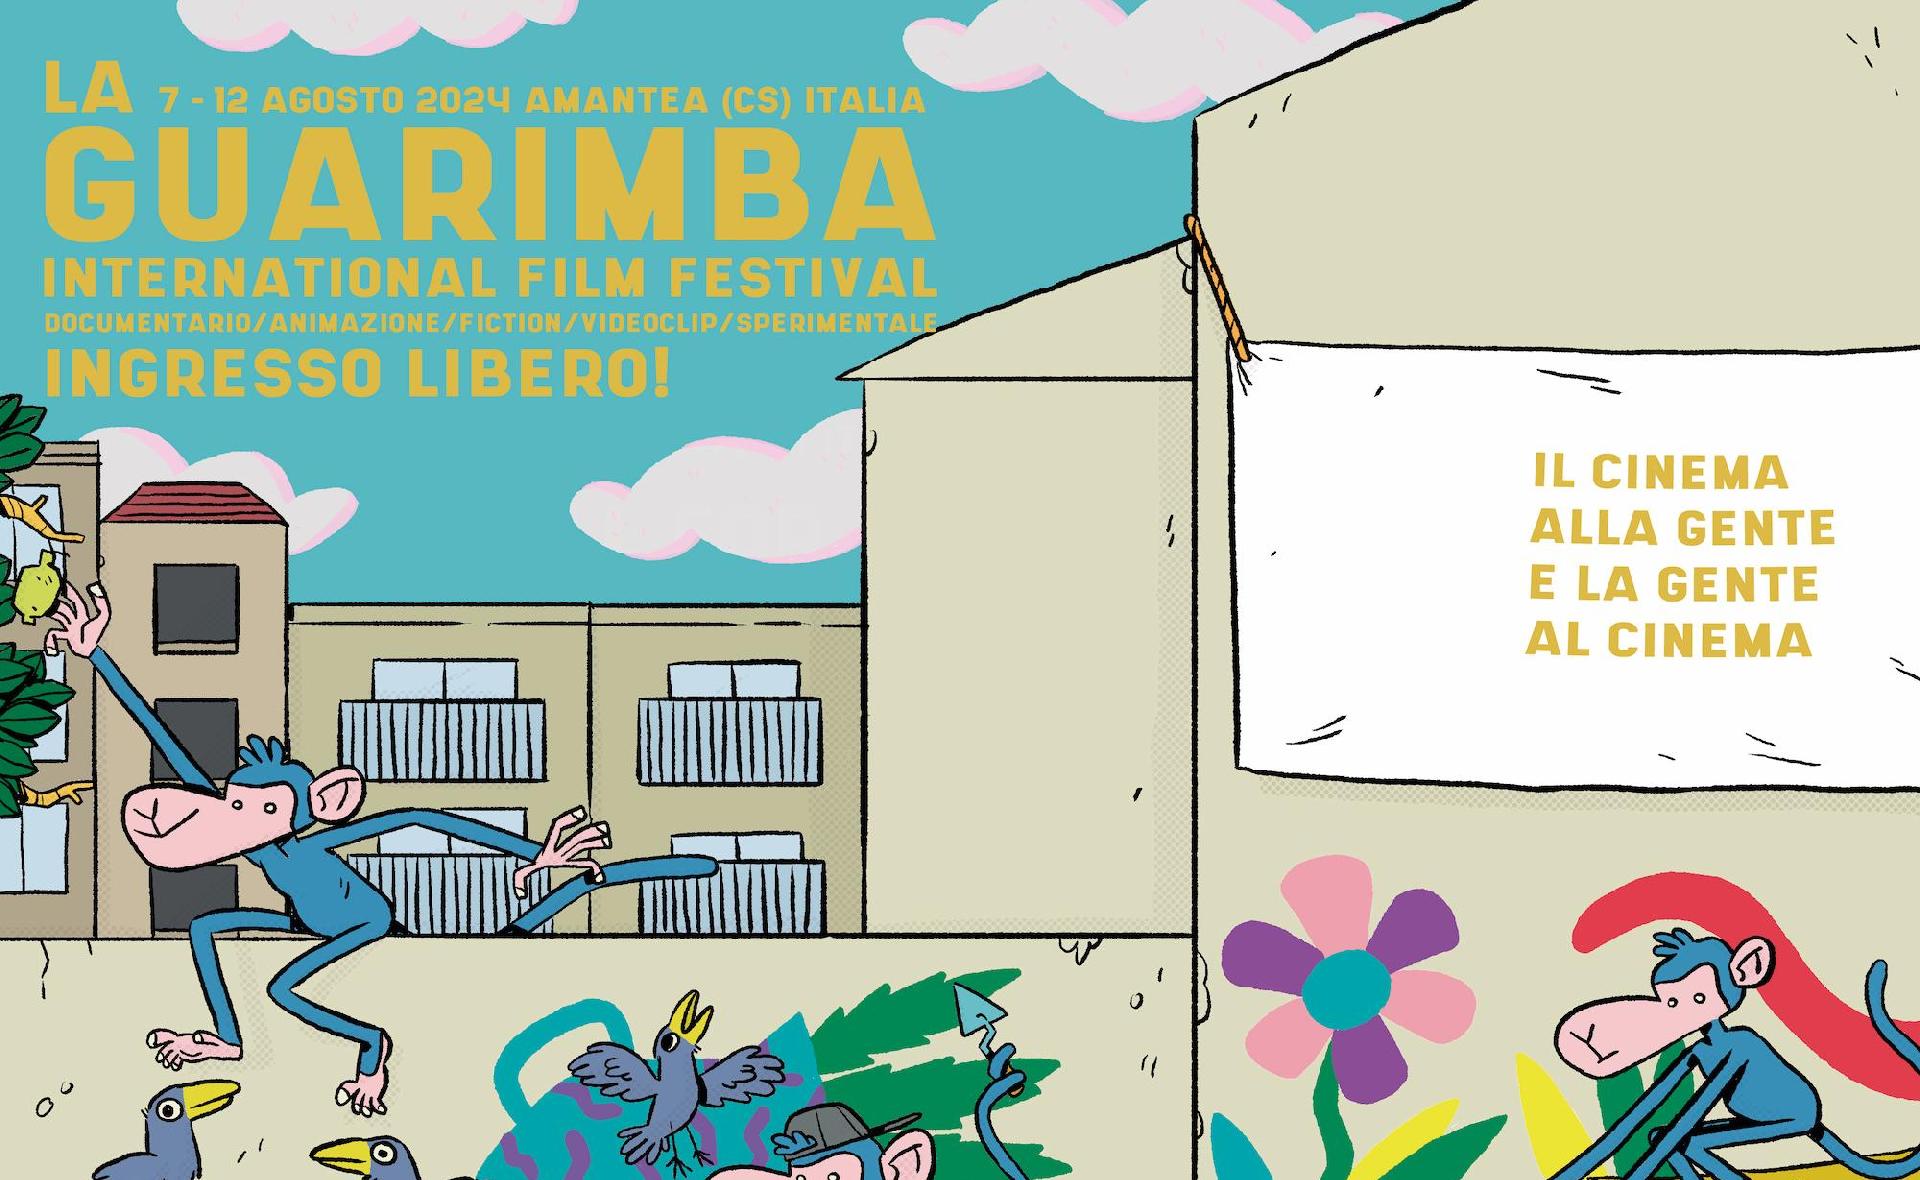 Magyar animációs rövidfilmek a La Guarimba Nemzetközi Filmfesztiválon